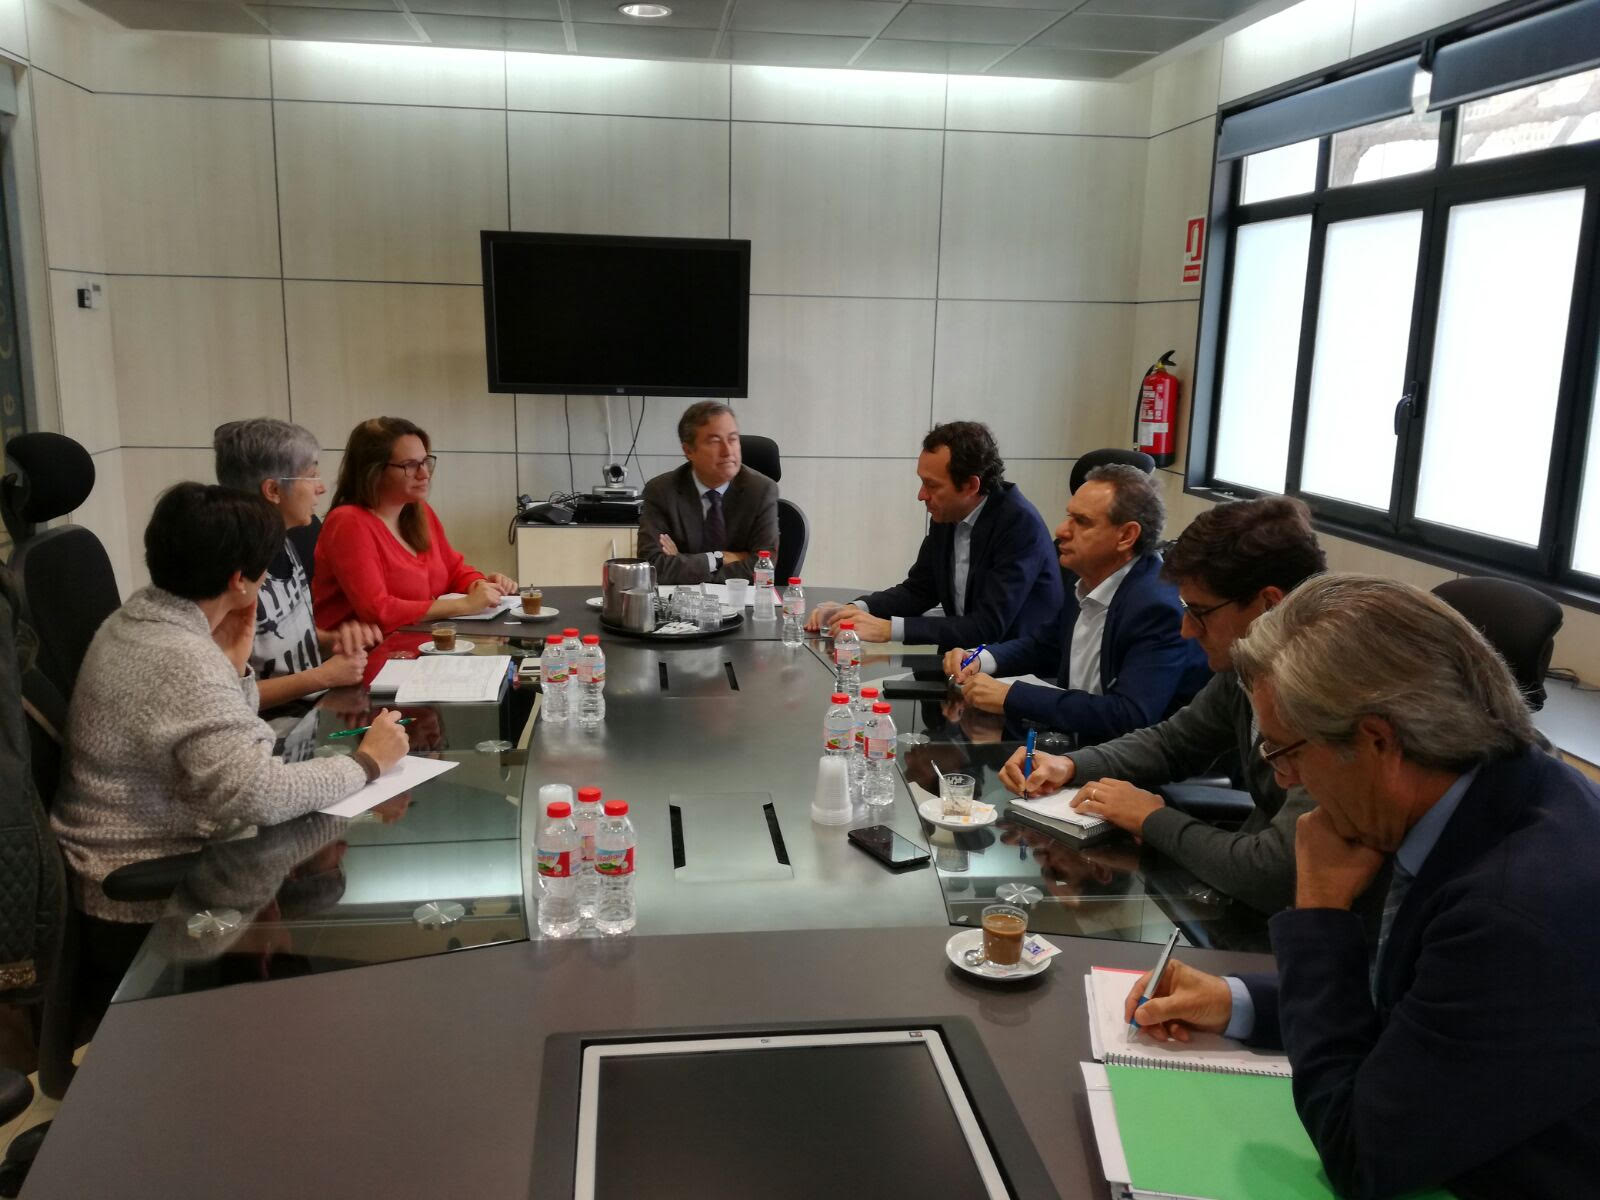 PortsIB, Autoridad Portuaria und die Stadtverwaltungen von Ciutadella und Maó versammeln sich, um die Aktivität der zwei Häfen zu koordinieren